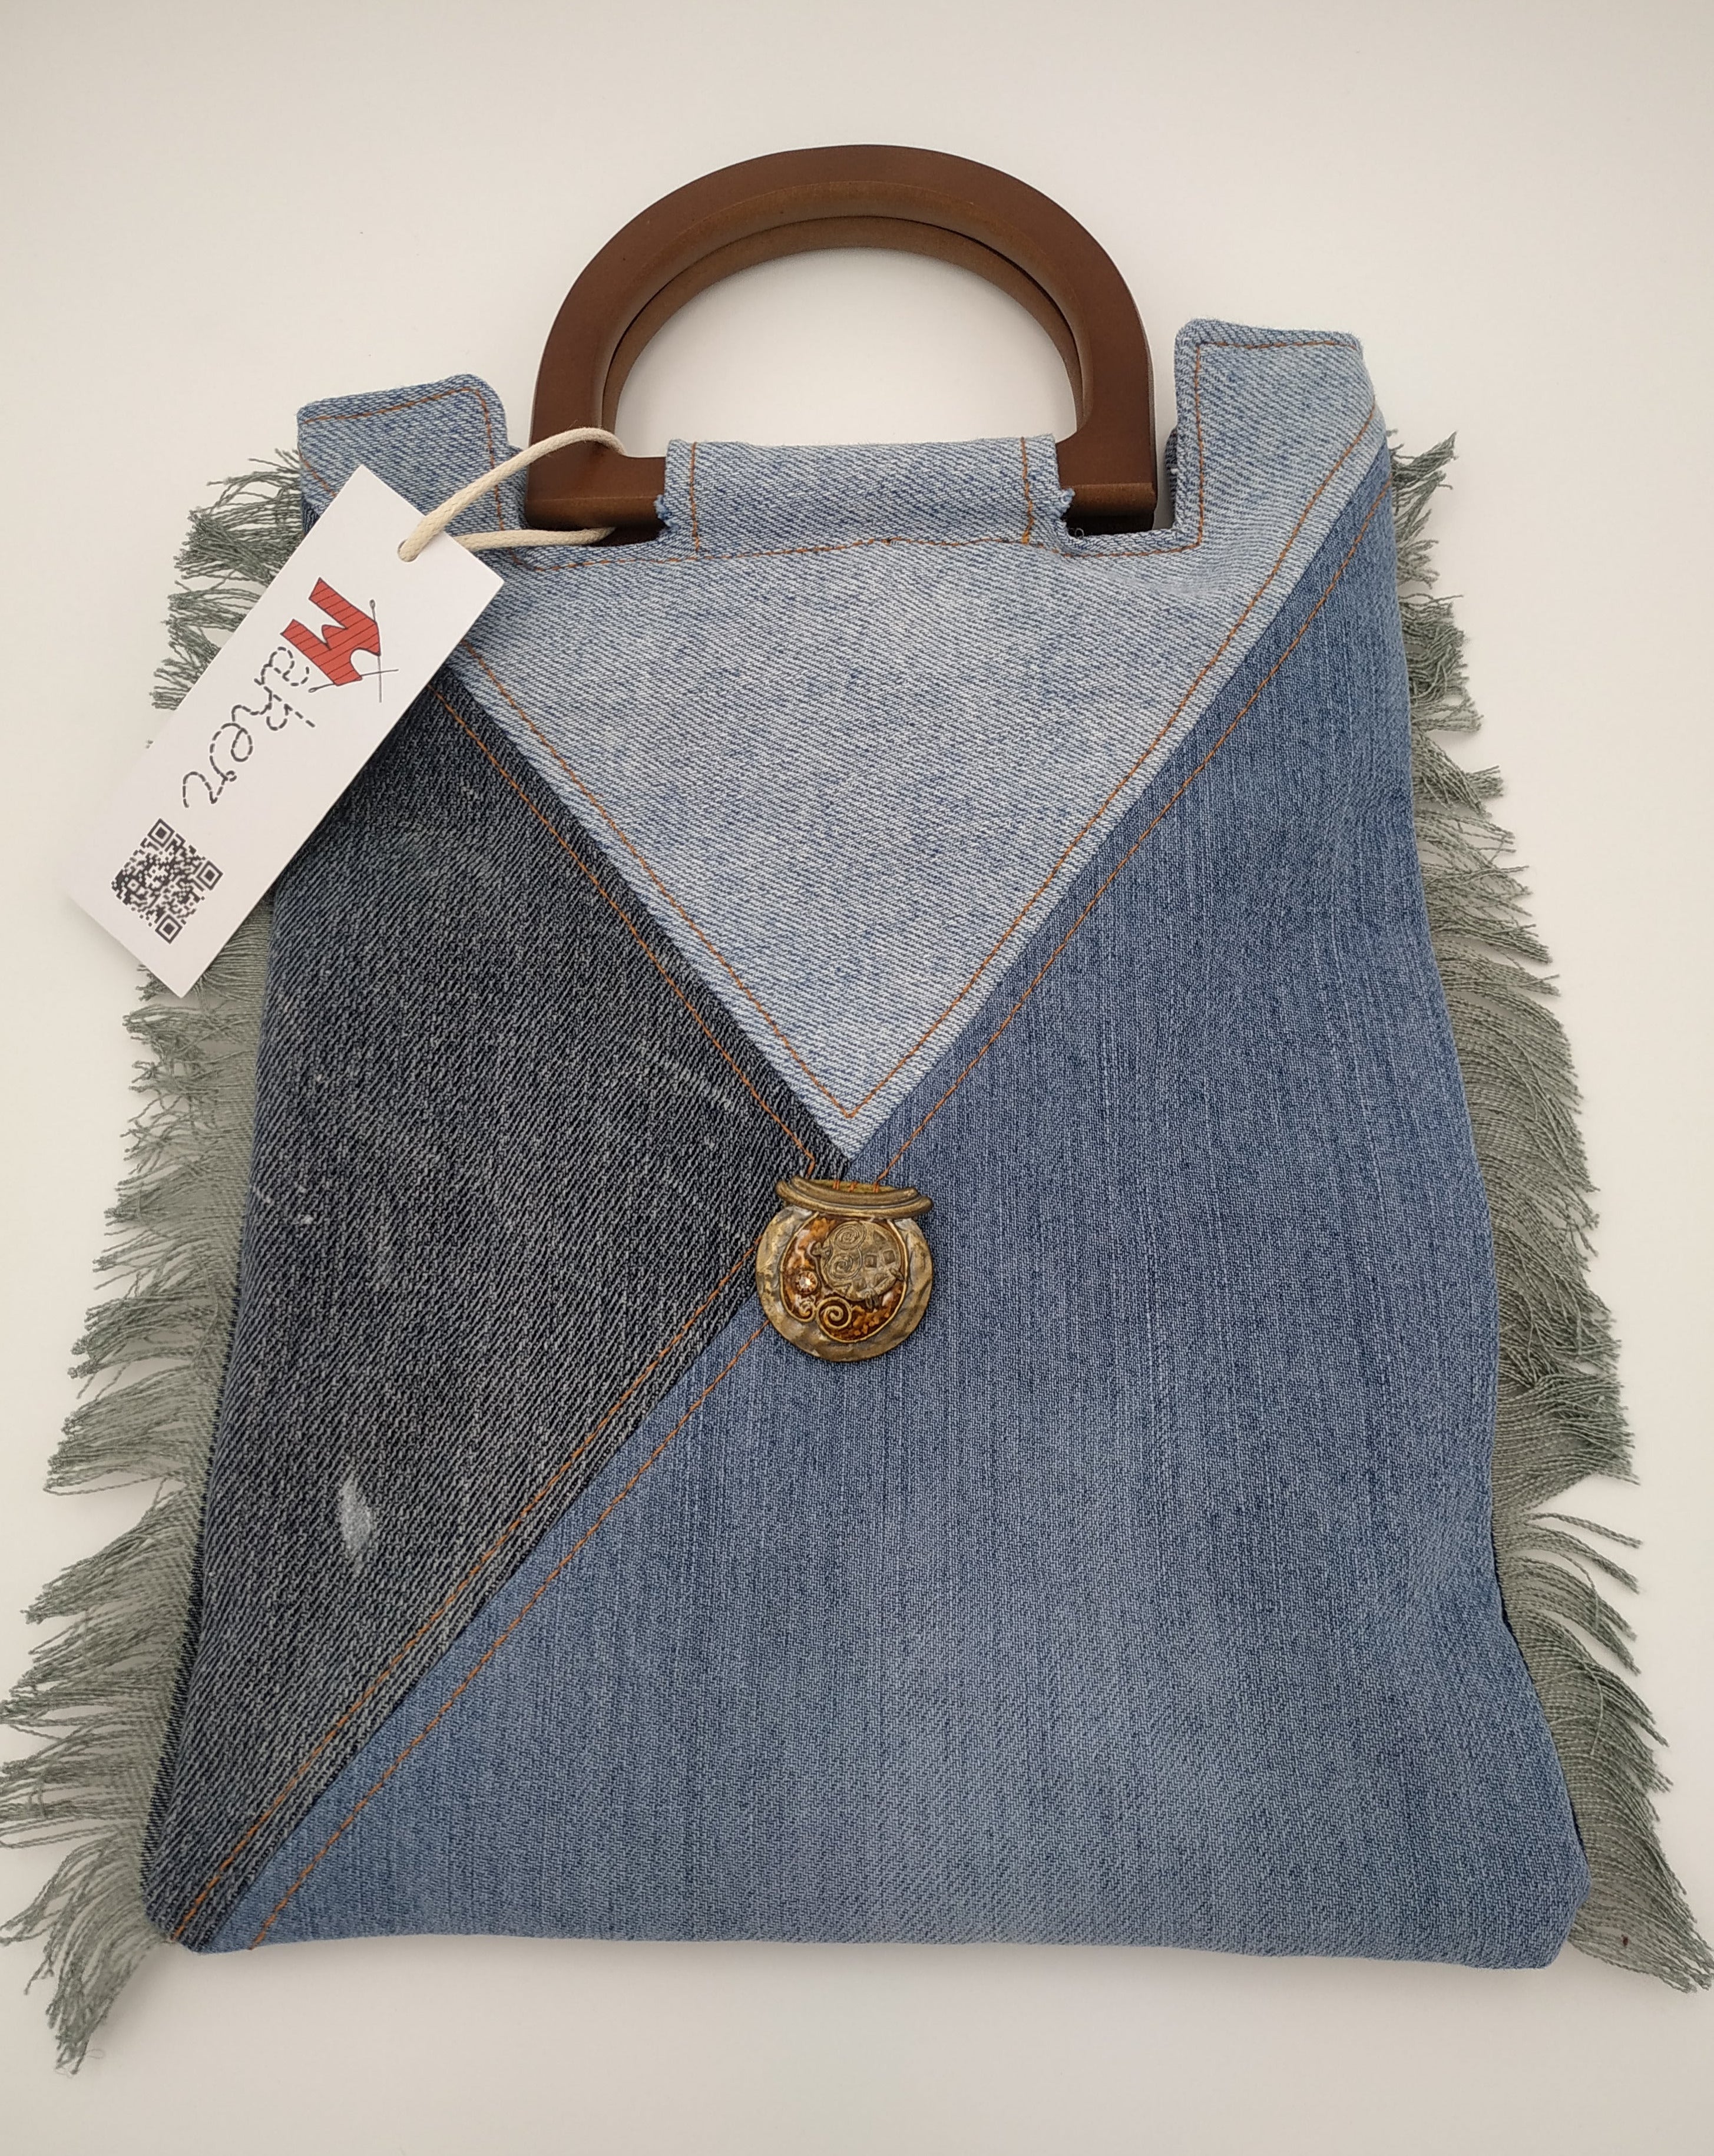 Mini sac en jeans recyclés, anses demi-lune en bois, franges sur les côtés et bijou central